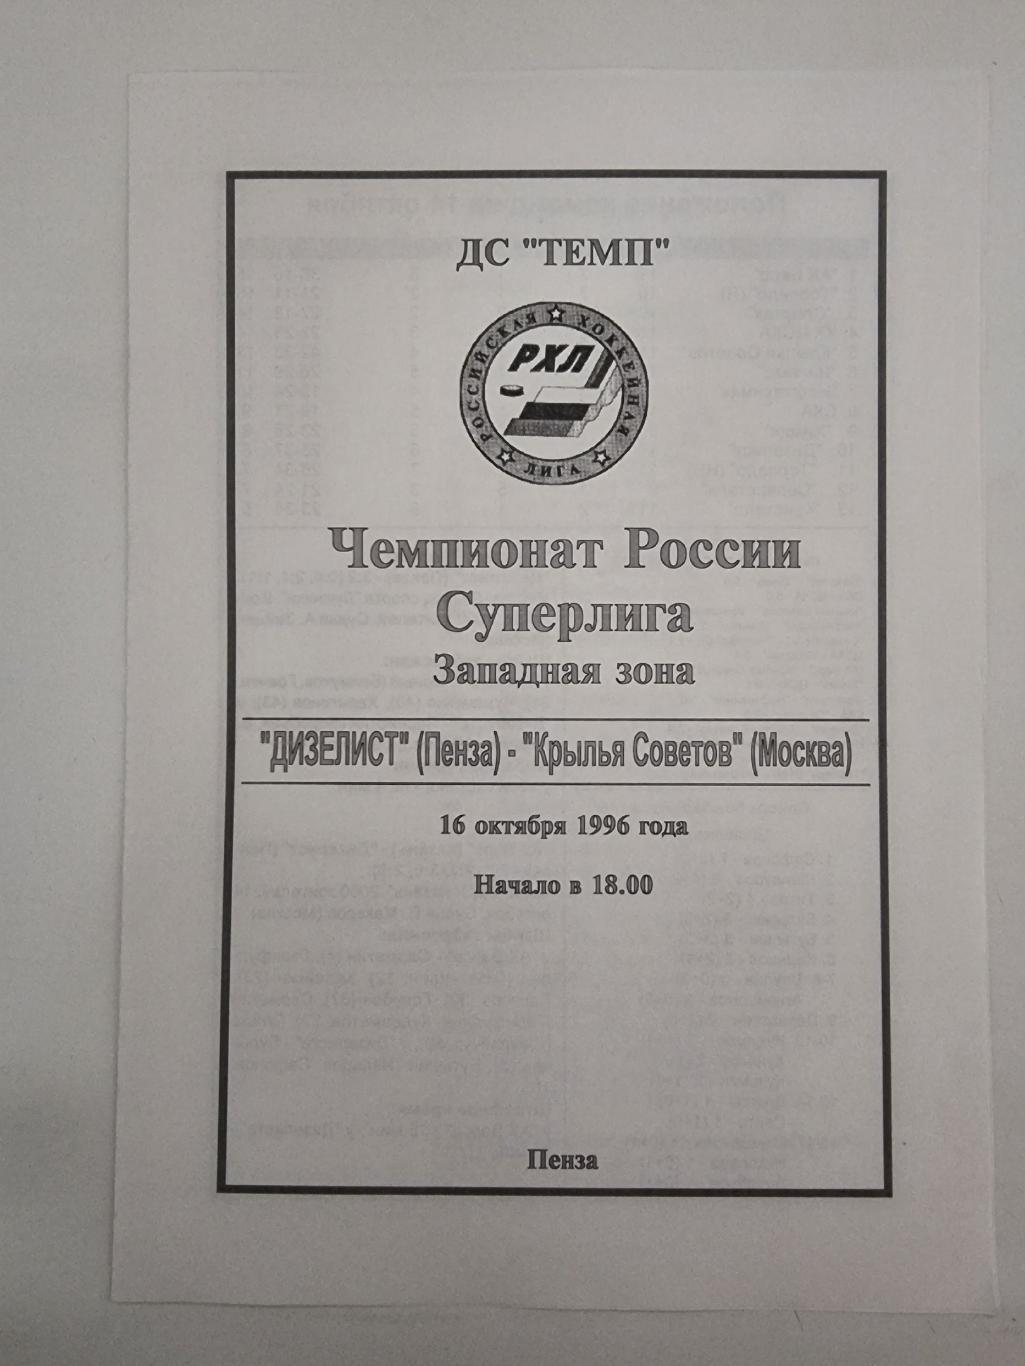 Дизелист Пенза - Крылья Советов Москва 16 октября 1996 (1 вид)